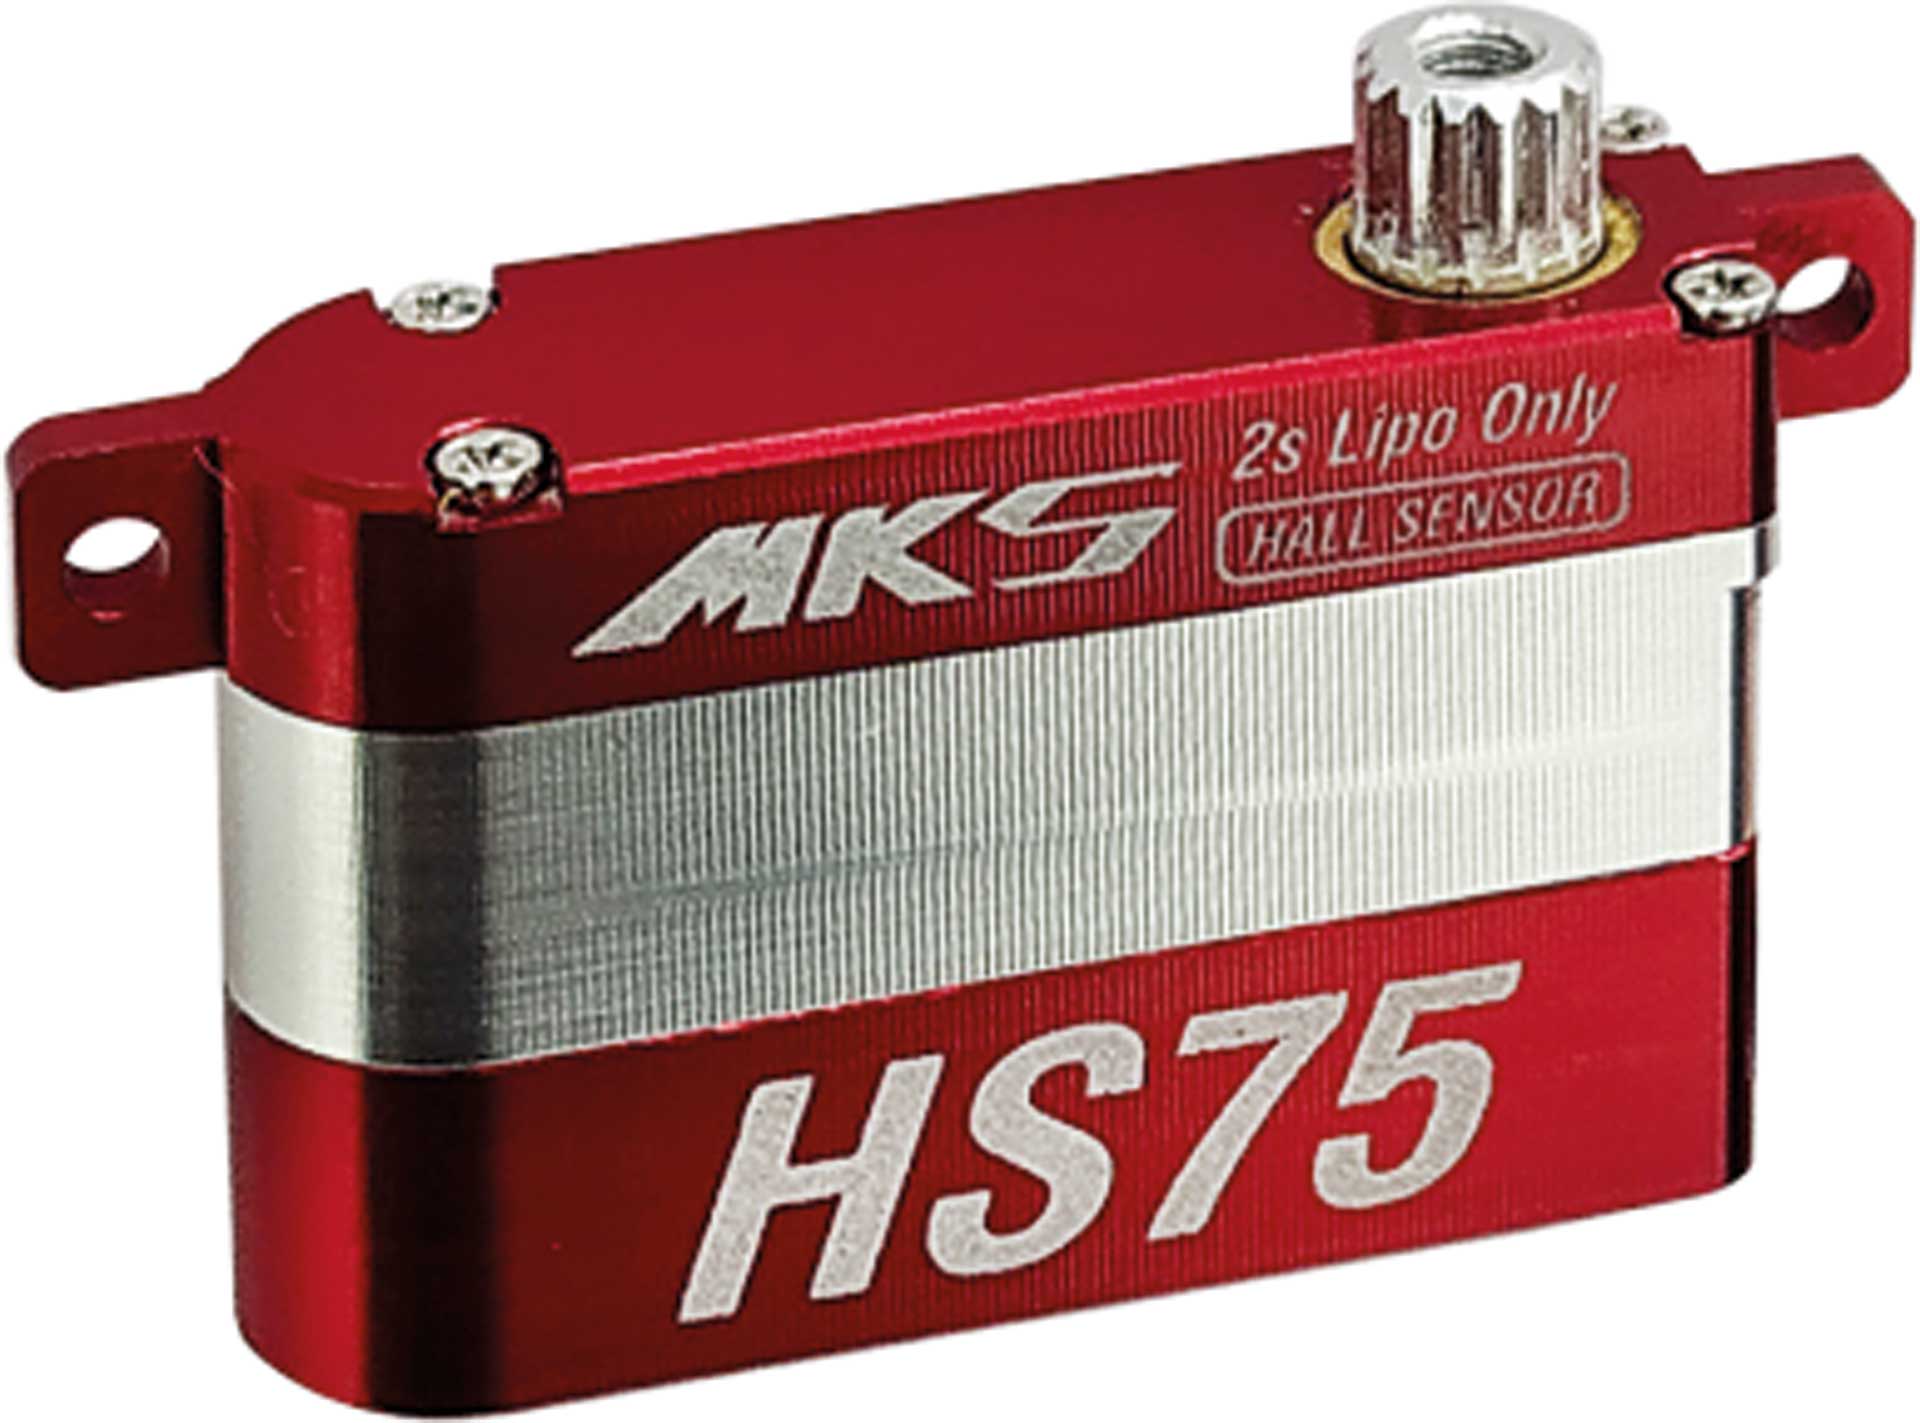 MKS HS75 Digital Servo avec capteurs à effet Hall F3K/F5K/F5J.....